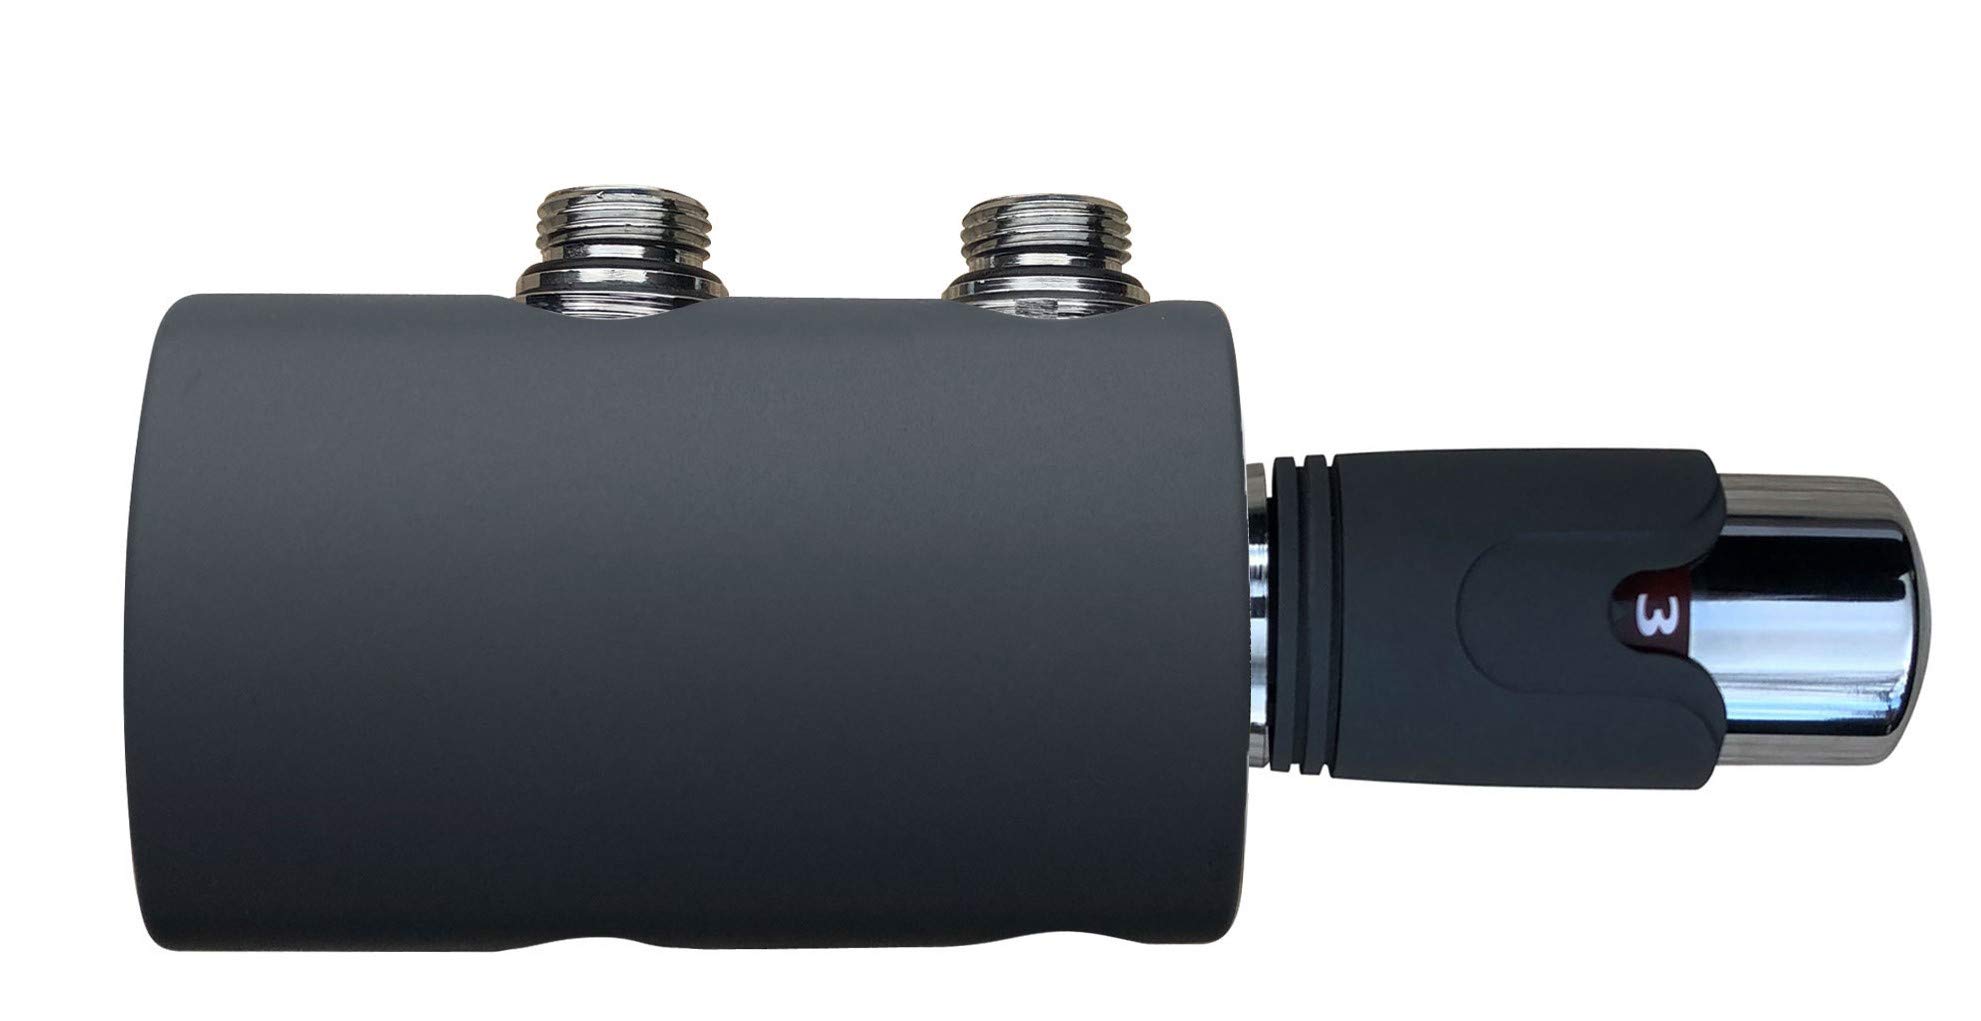 Anthrazit Thermostat Multiblock Hahnblock für Badheizkörper mit zweirohr System Heizkörper Mittelanschluß-Set 50mm